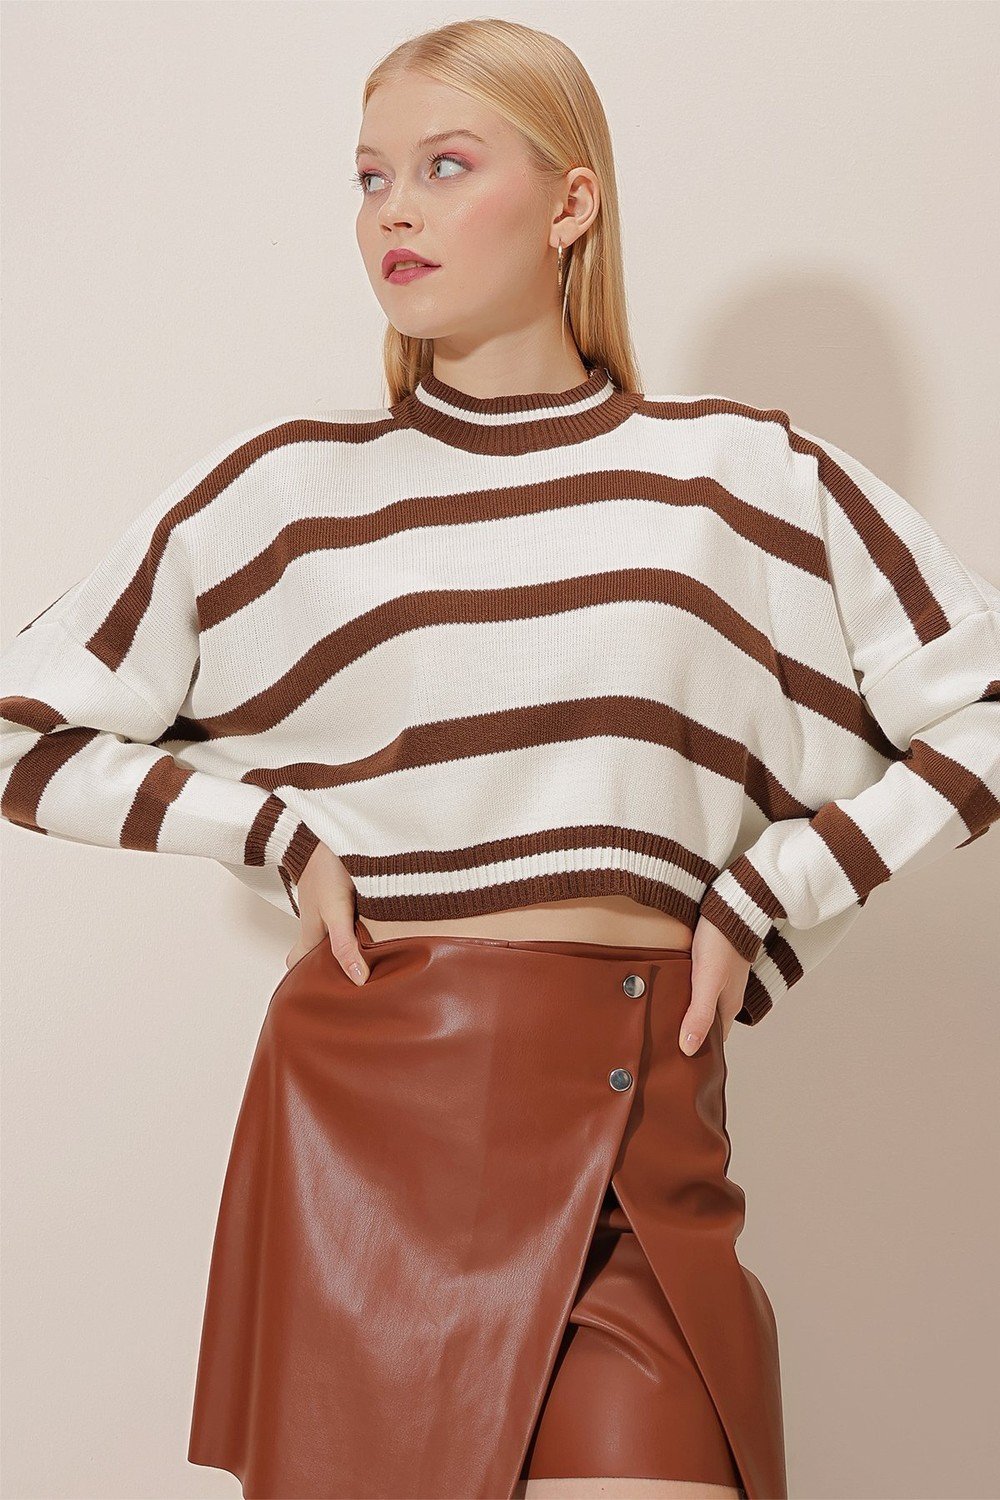 HAKKE Striped Bagel Collar Knitwear Crop Sweater